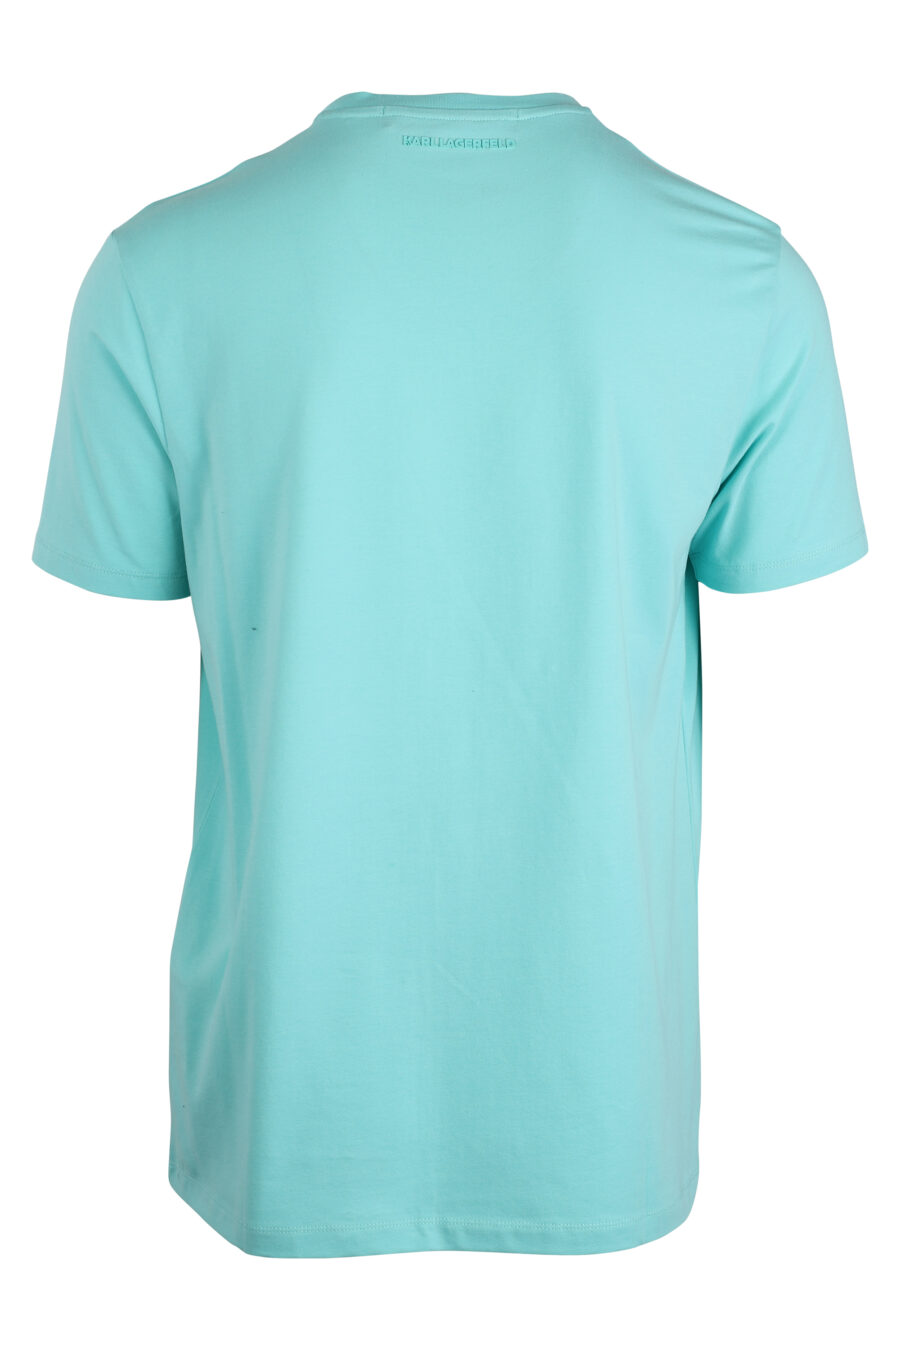 Camiseta azul claro con logo "ikonik" - IMG 4282